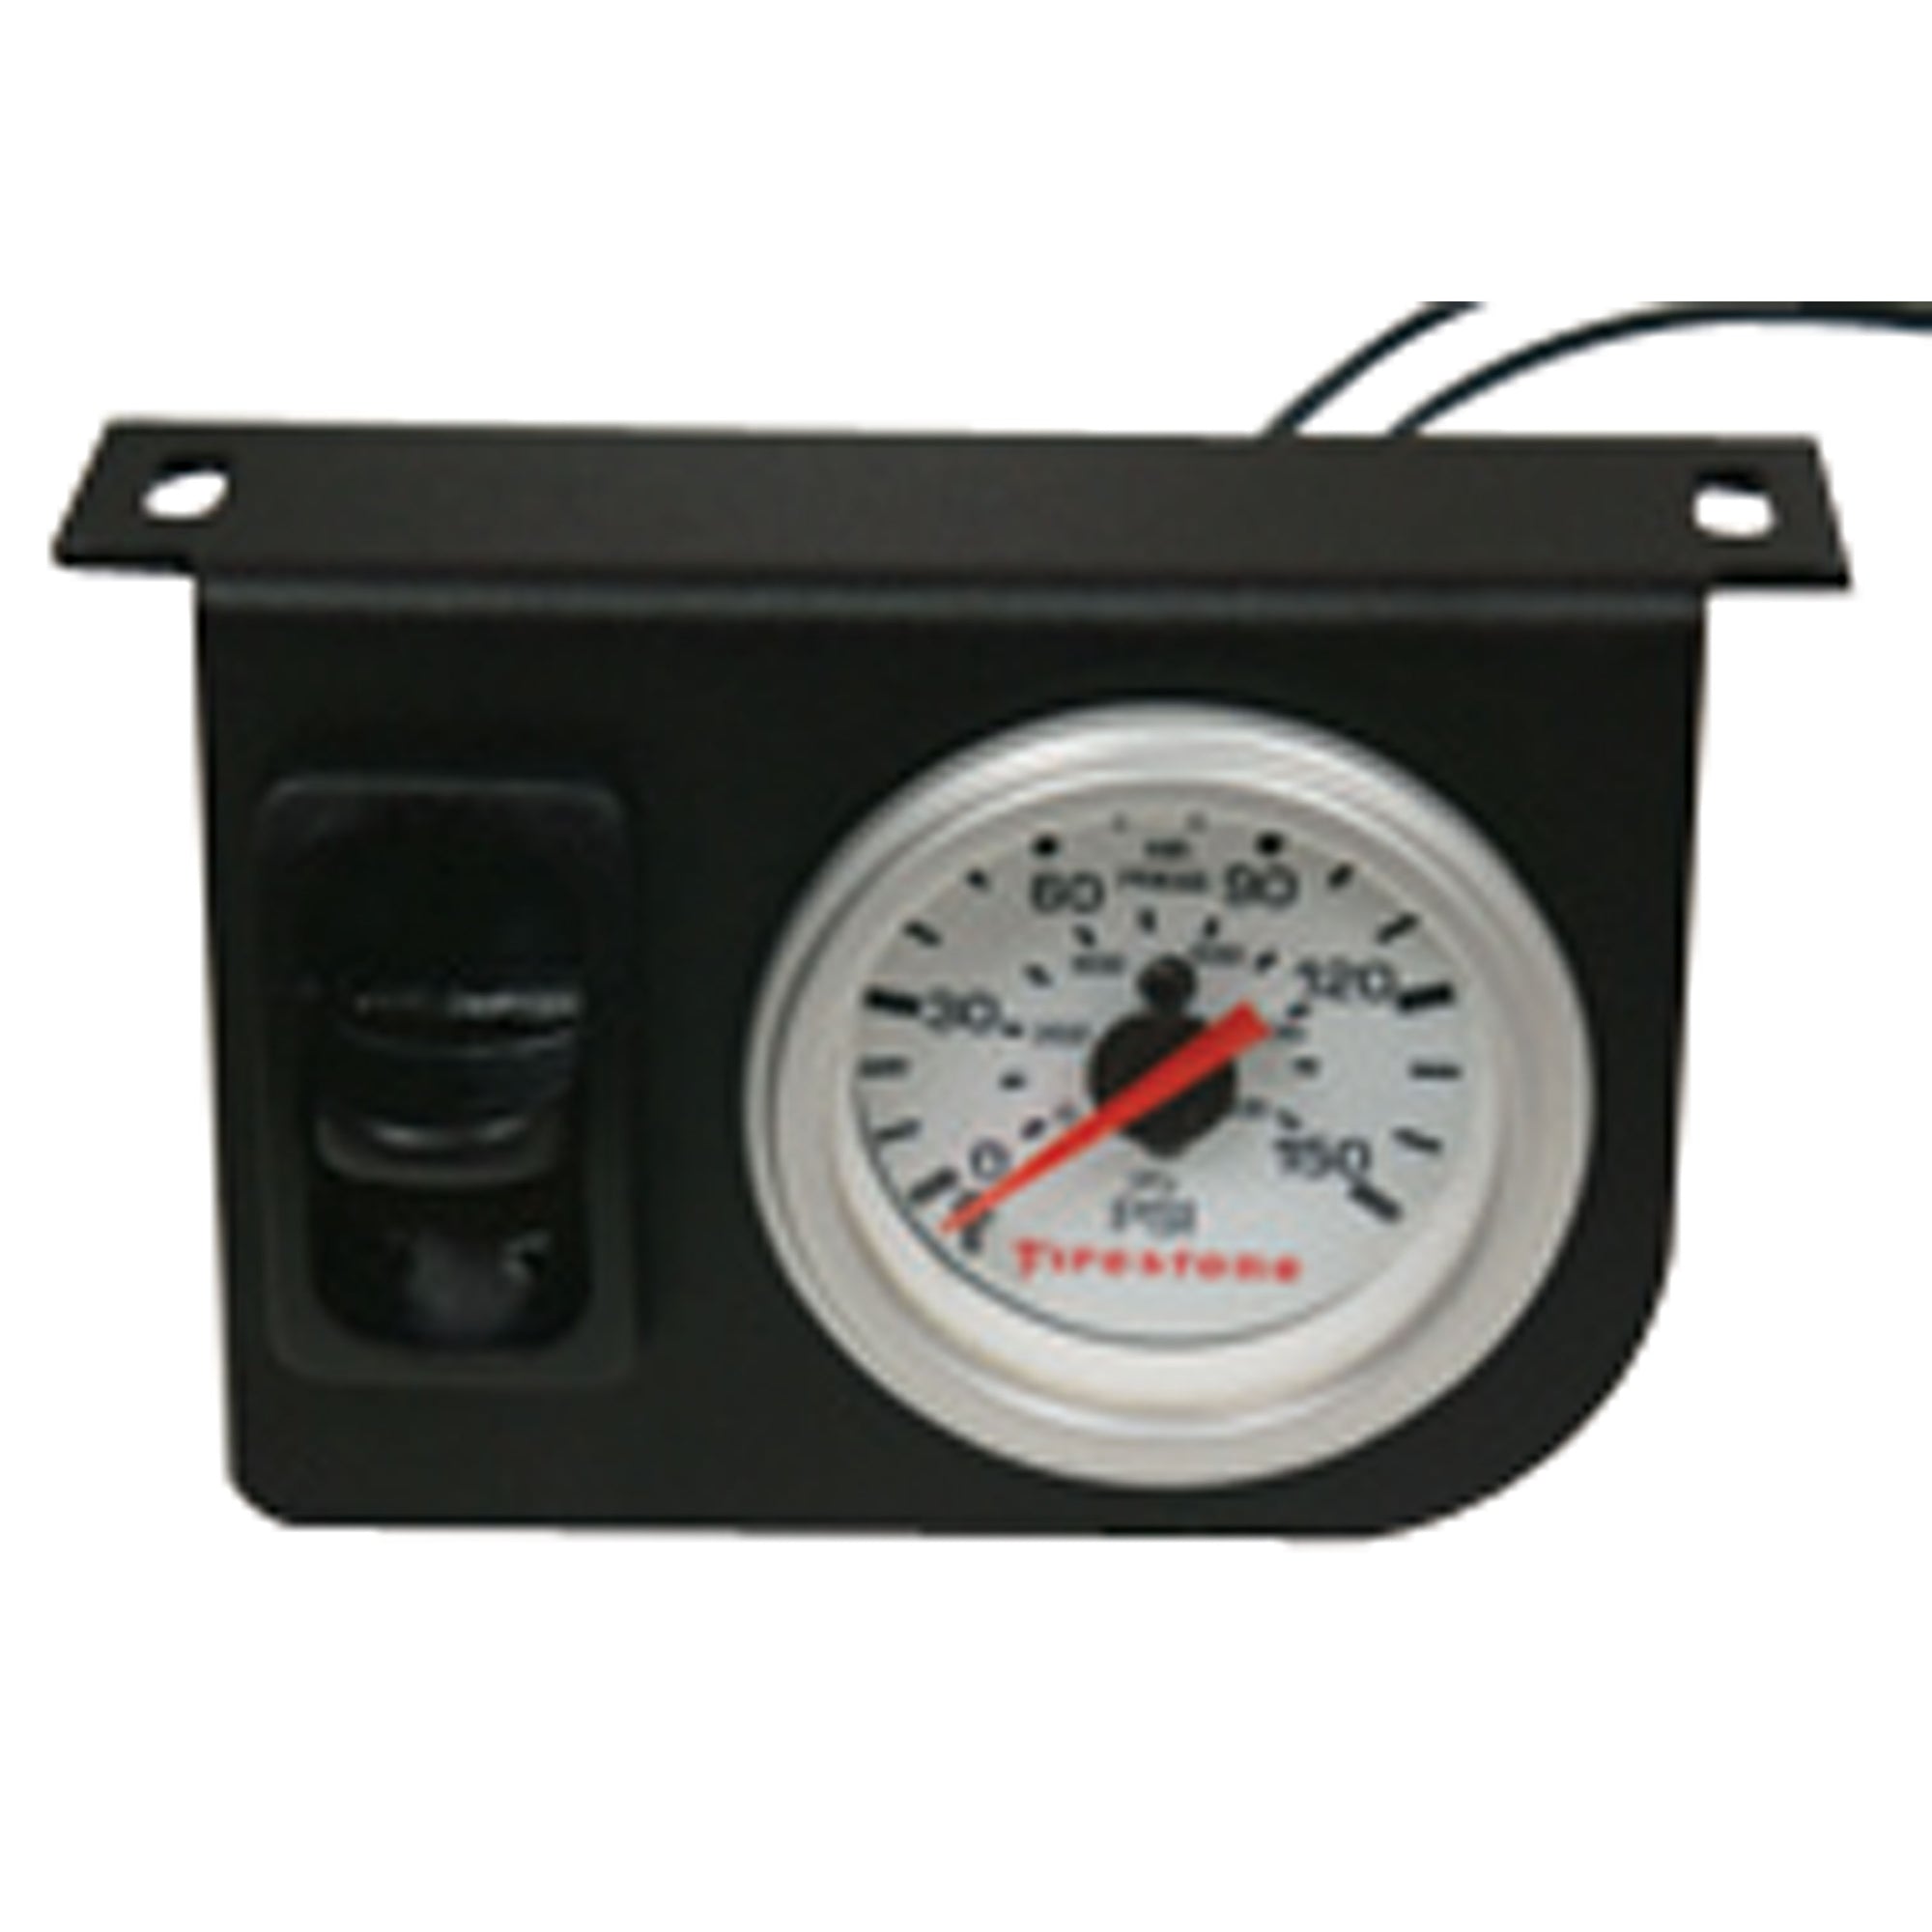 Firestone 2196 Air-Rite Pressure Monitor - Single Classic Gauge